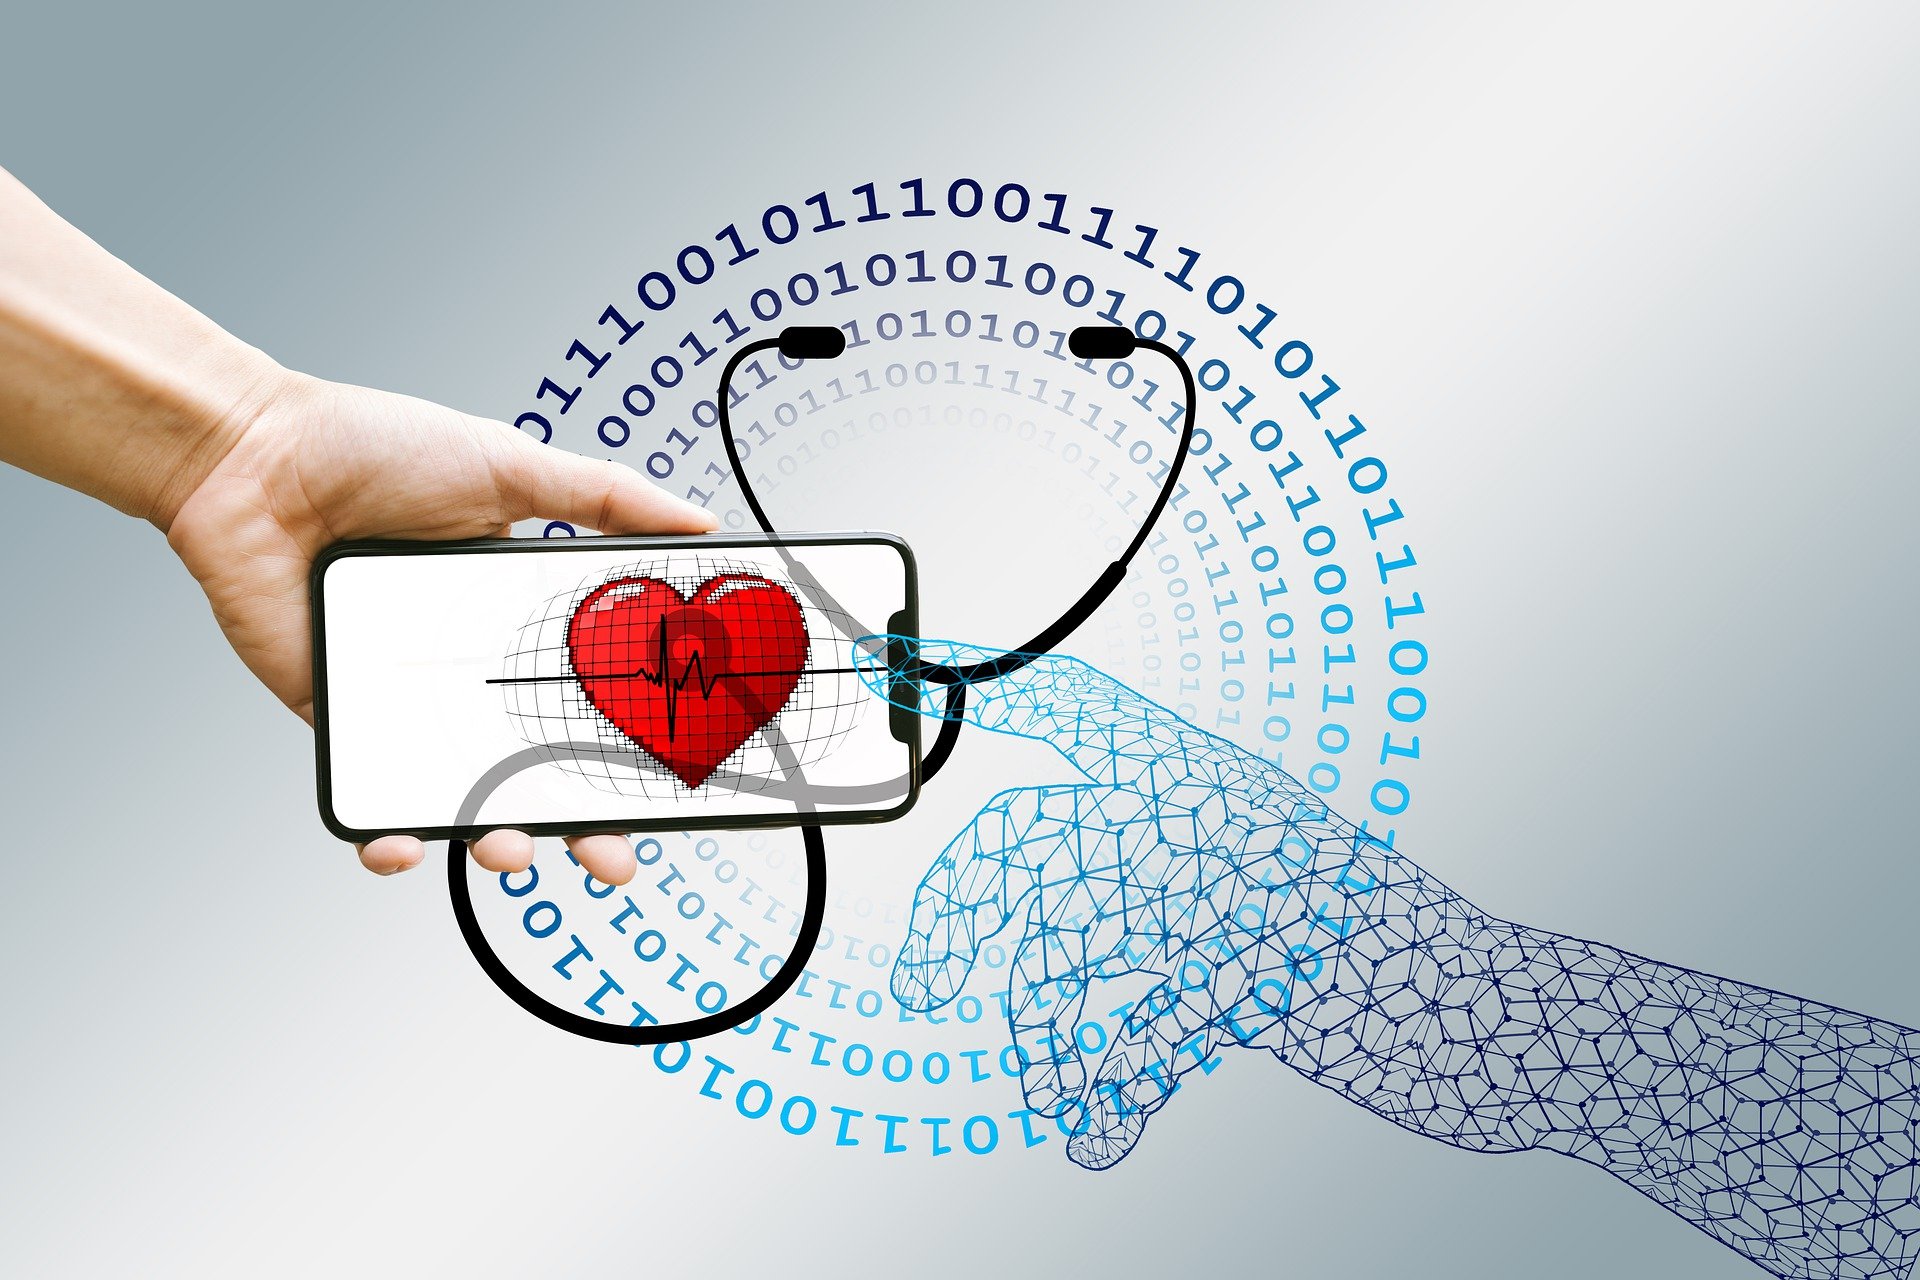 Ψηφιακή υγεία: Στρατηγικές διαχείρισης της ψηφιακής υγείας